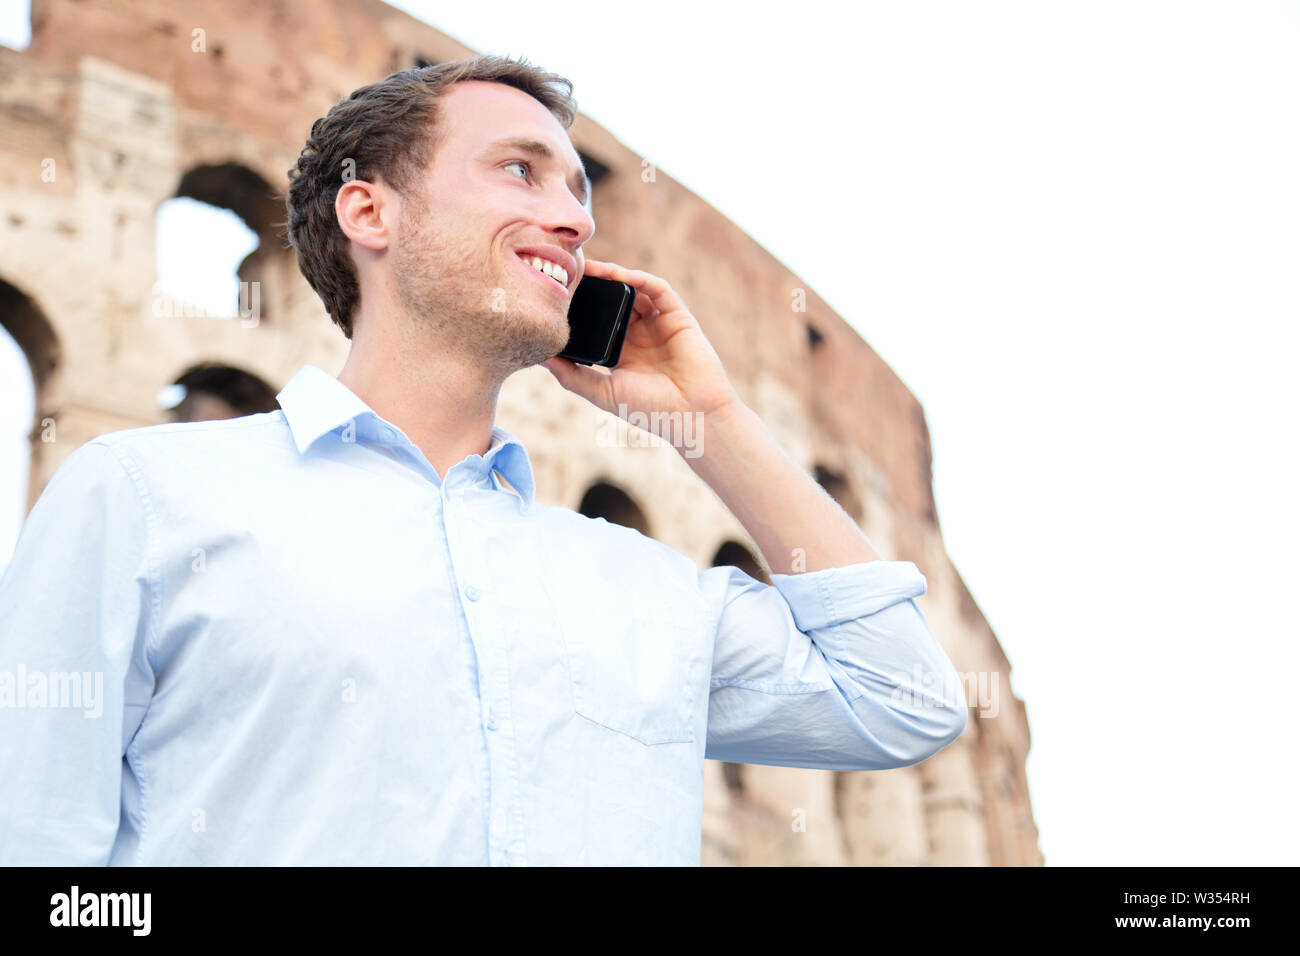 Business Mann auf Handy, Kolosseum, Rom, Italien. Junge Unternehmer mit Smartphone außerhalb Glücklich lächelnde im casual Shirt vor dem Kolosseum. Kaukasier Männlich Professional in Europa. Stockfoto